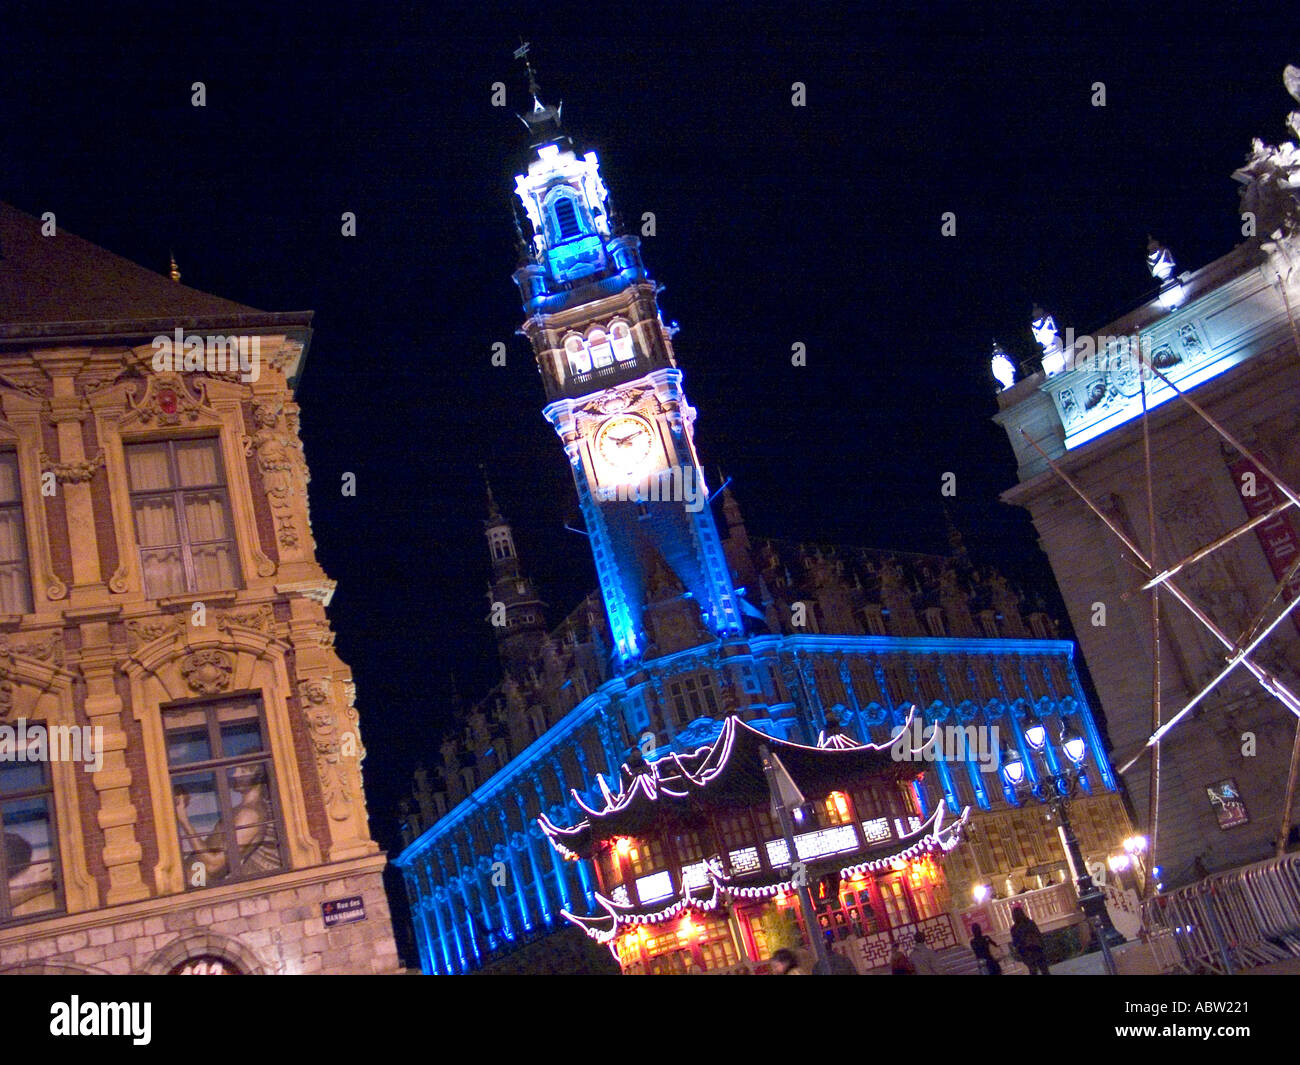 Lille City of night illuminations Stock Photo -